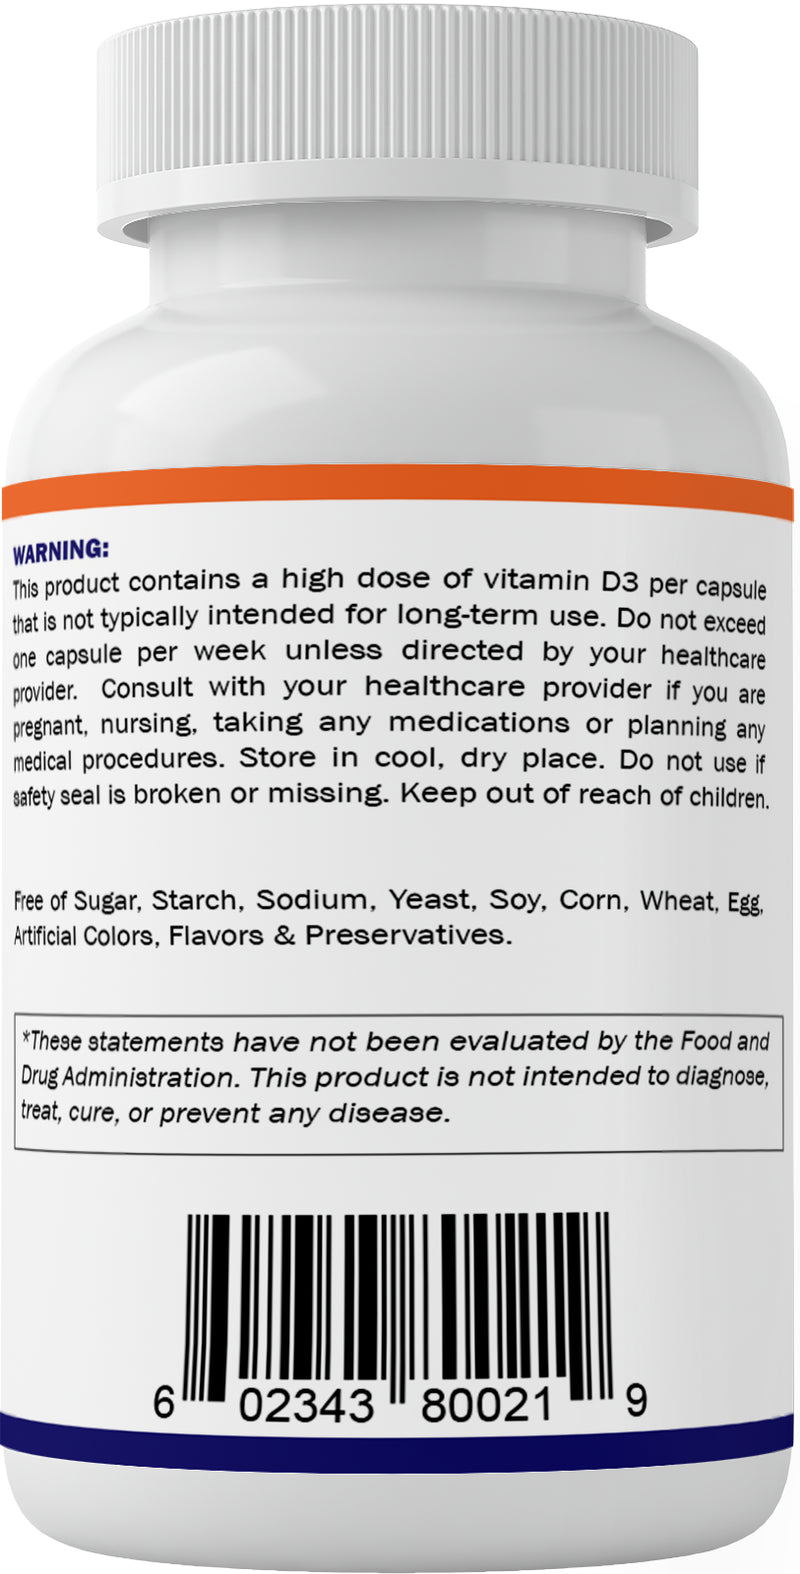 Vitamatic Vitamin D3 50,000 IU Weekly Dose 60 Veggie Capsules